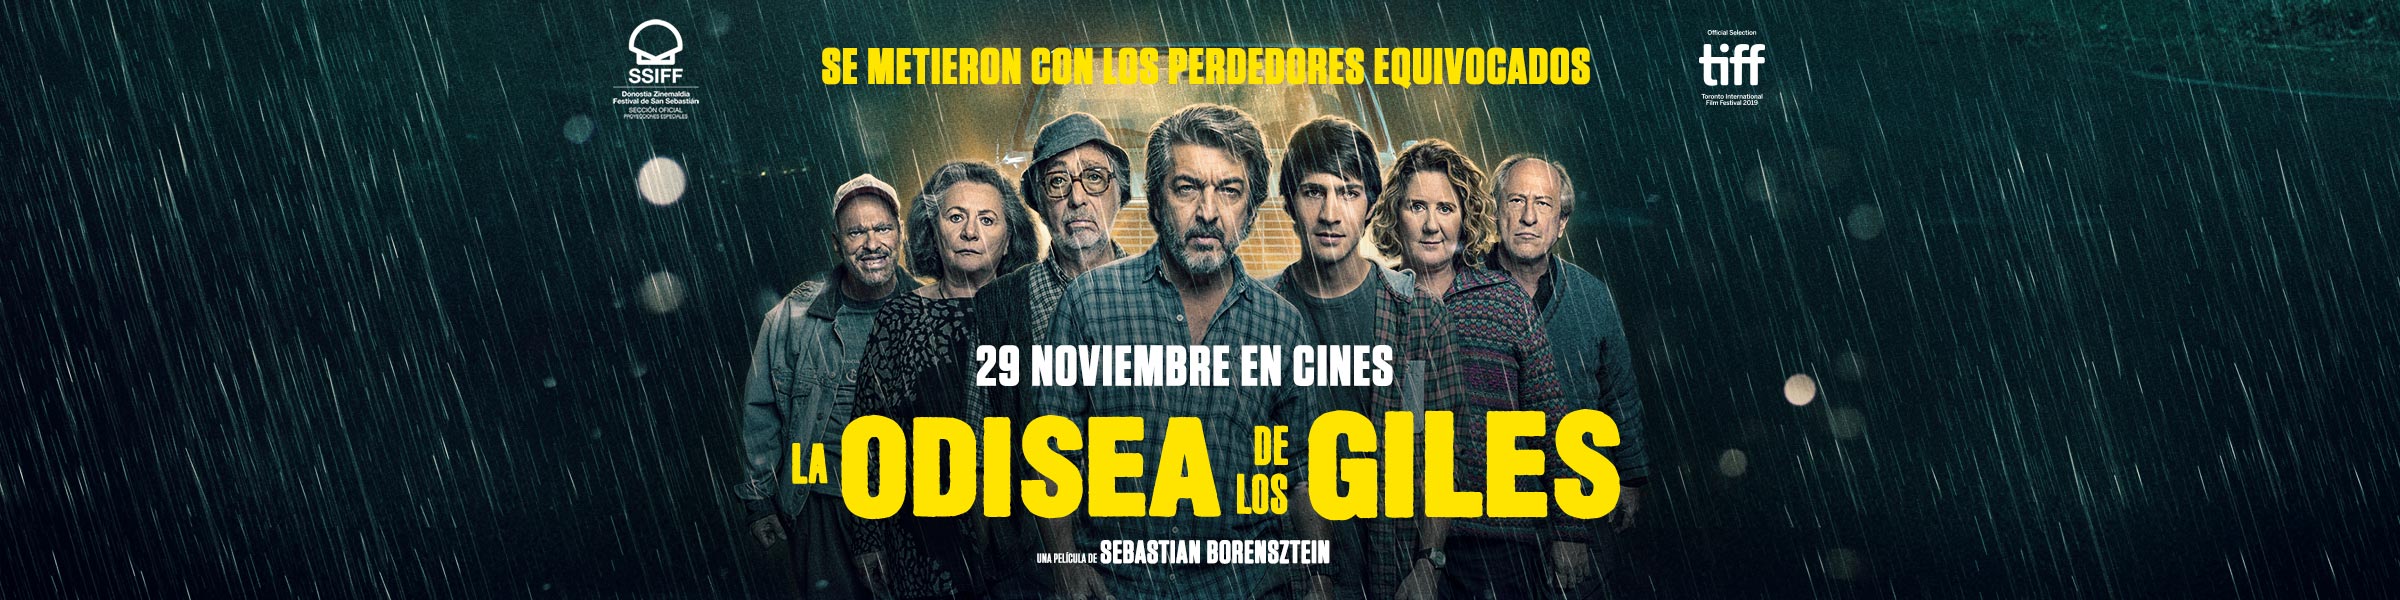 La odisea de los Giles en Cantones Cines de A Coruña